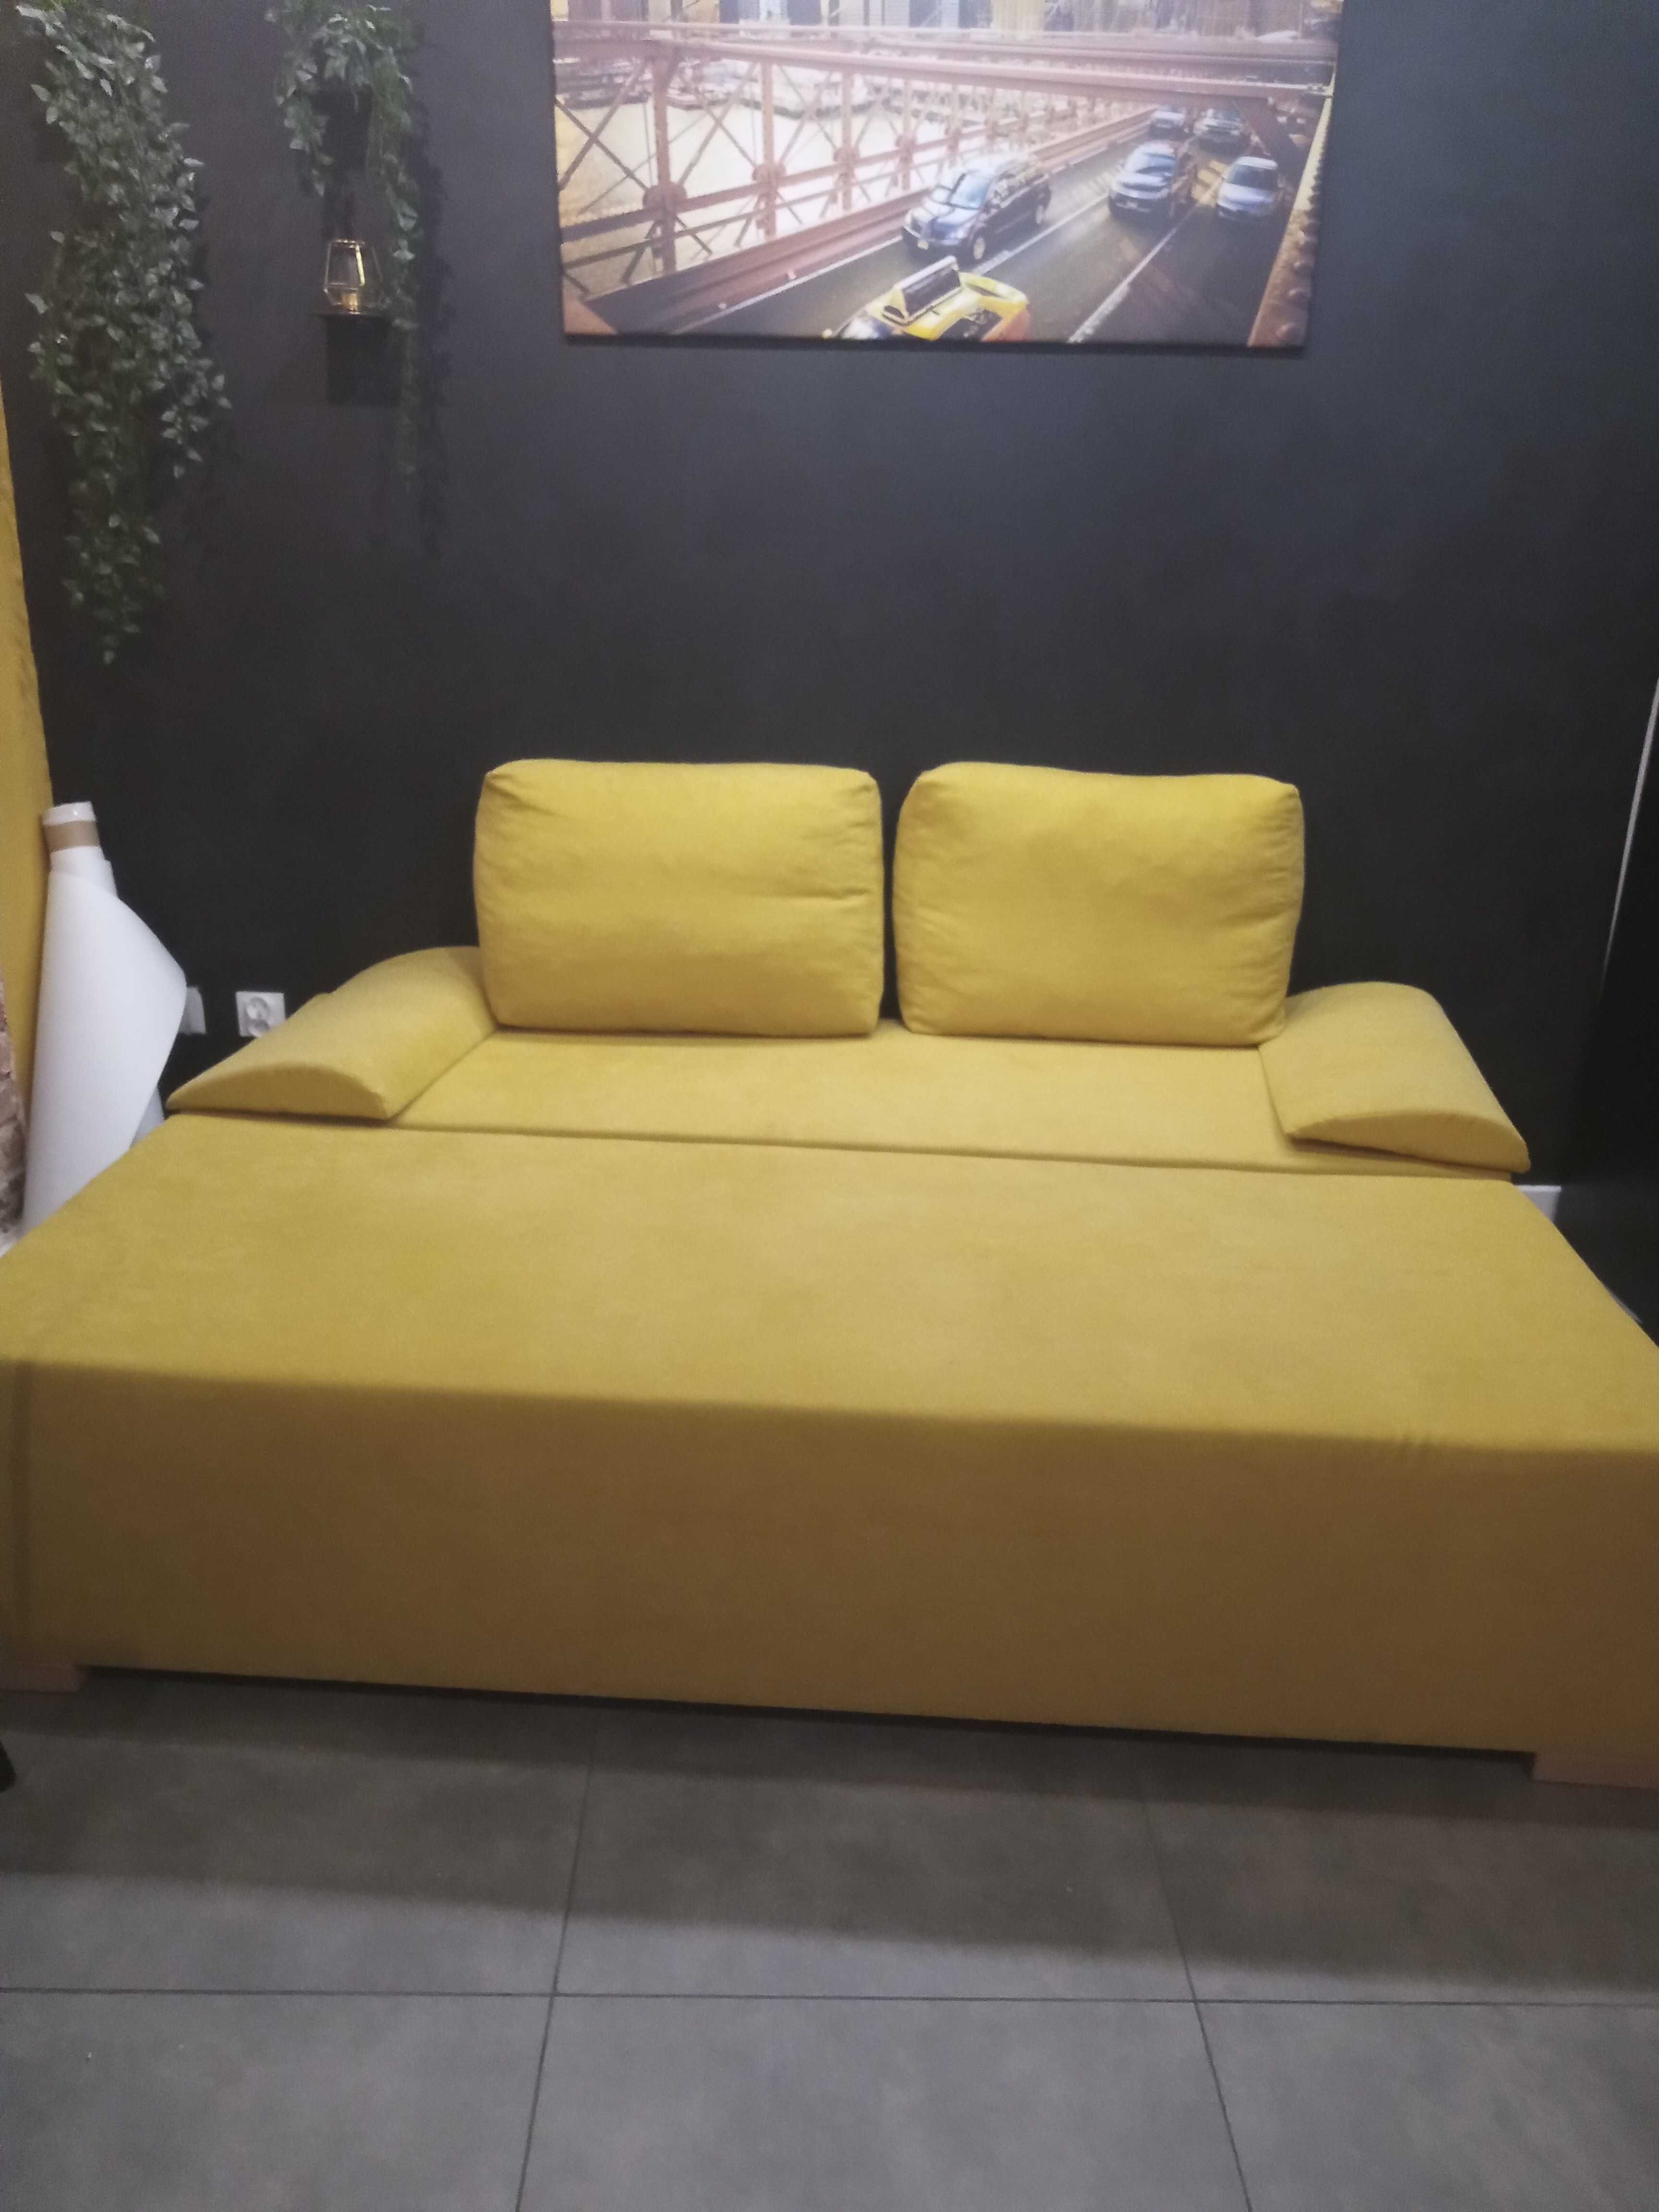 Kanapa żółta nowa mieszkanie deweloperskie funkcja spania